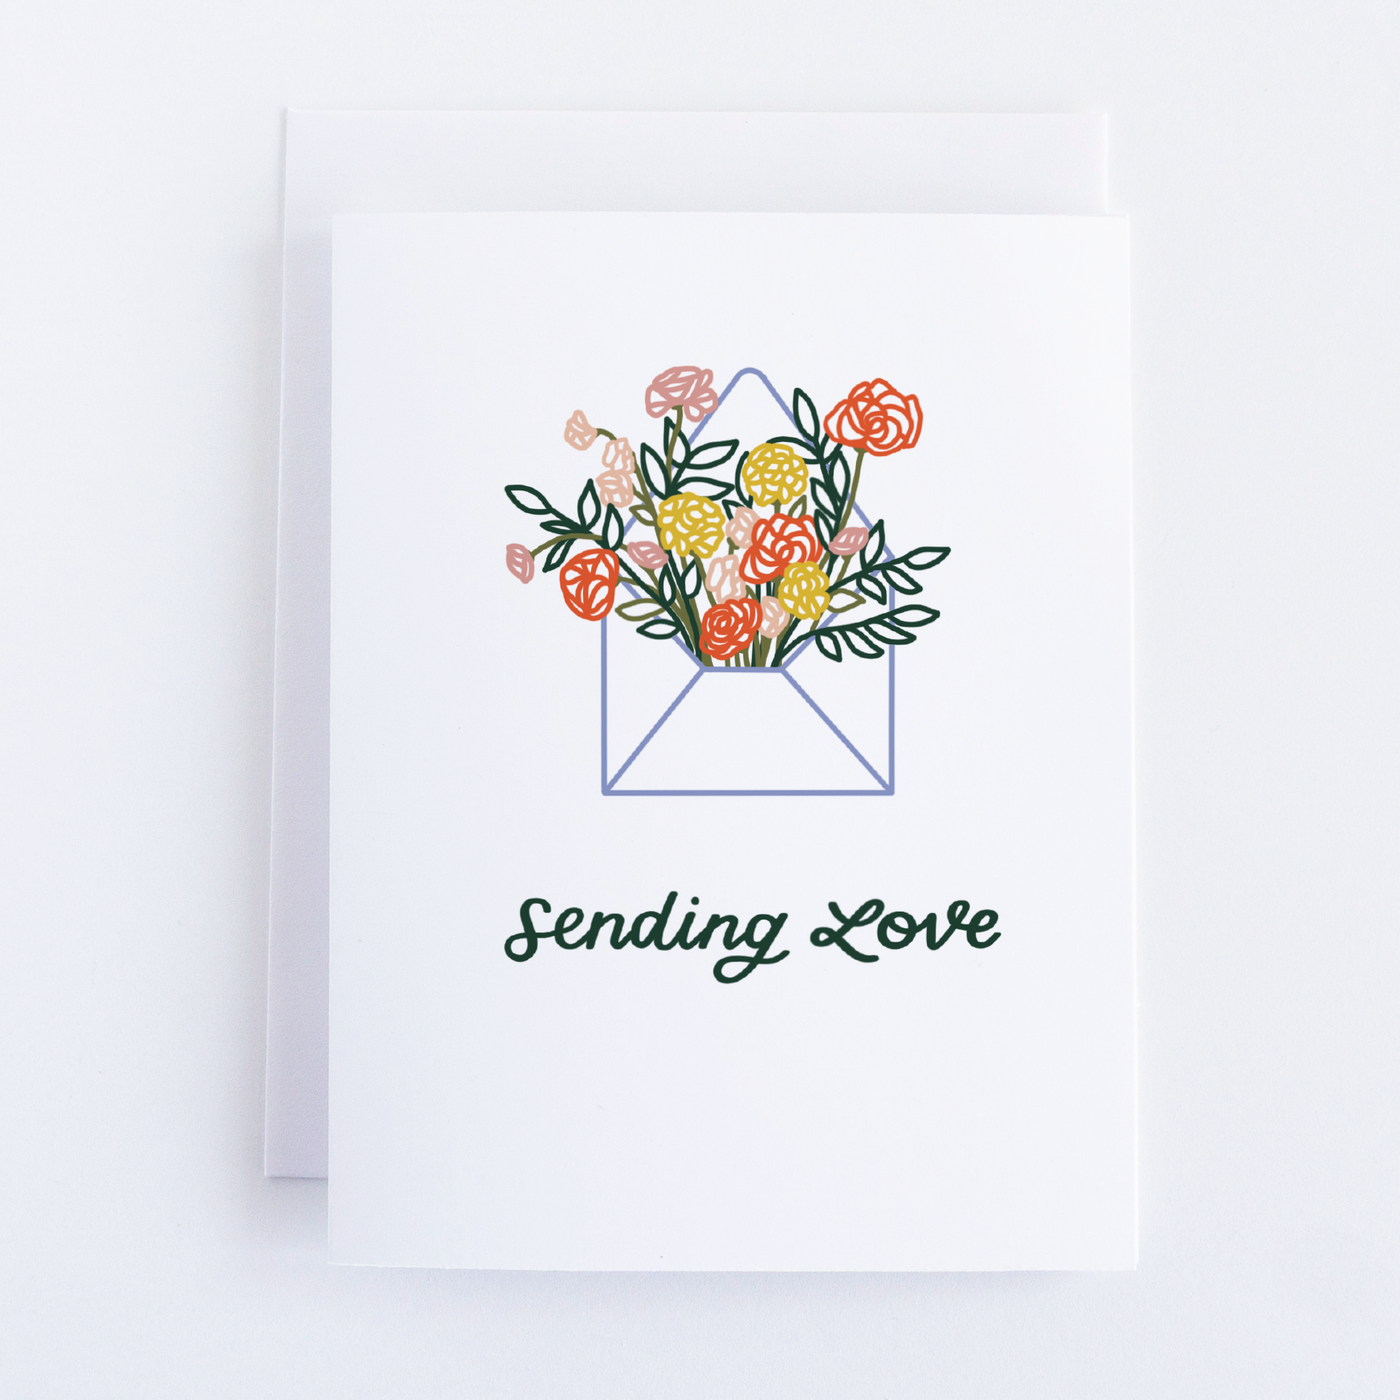 Just Follow Your Art - Sending Love Card